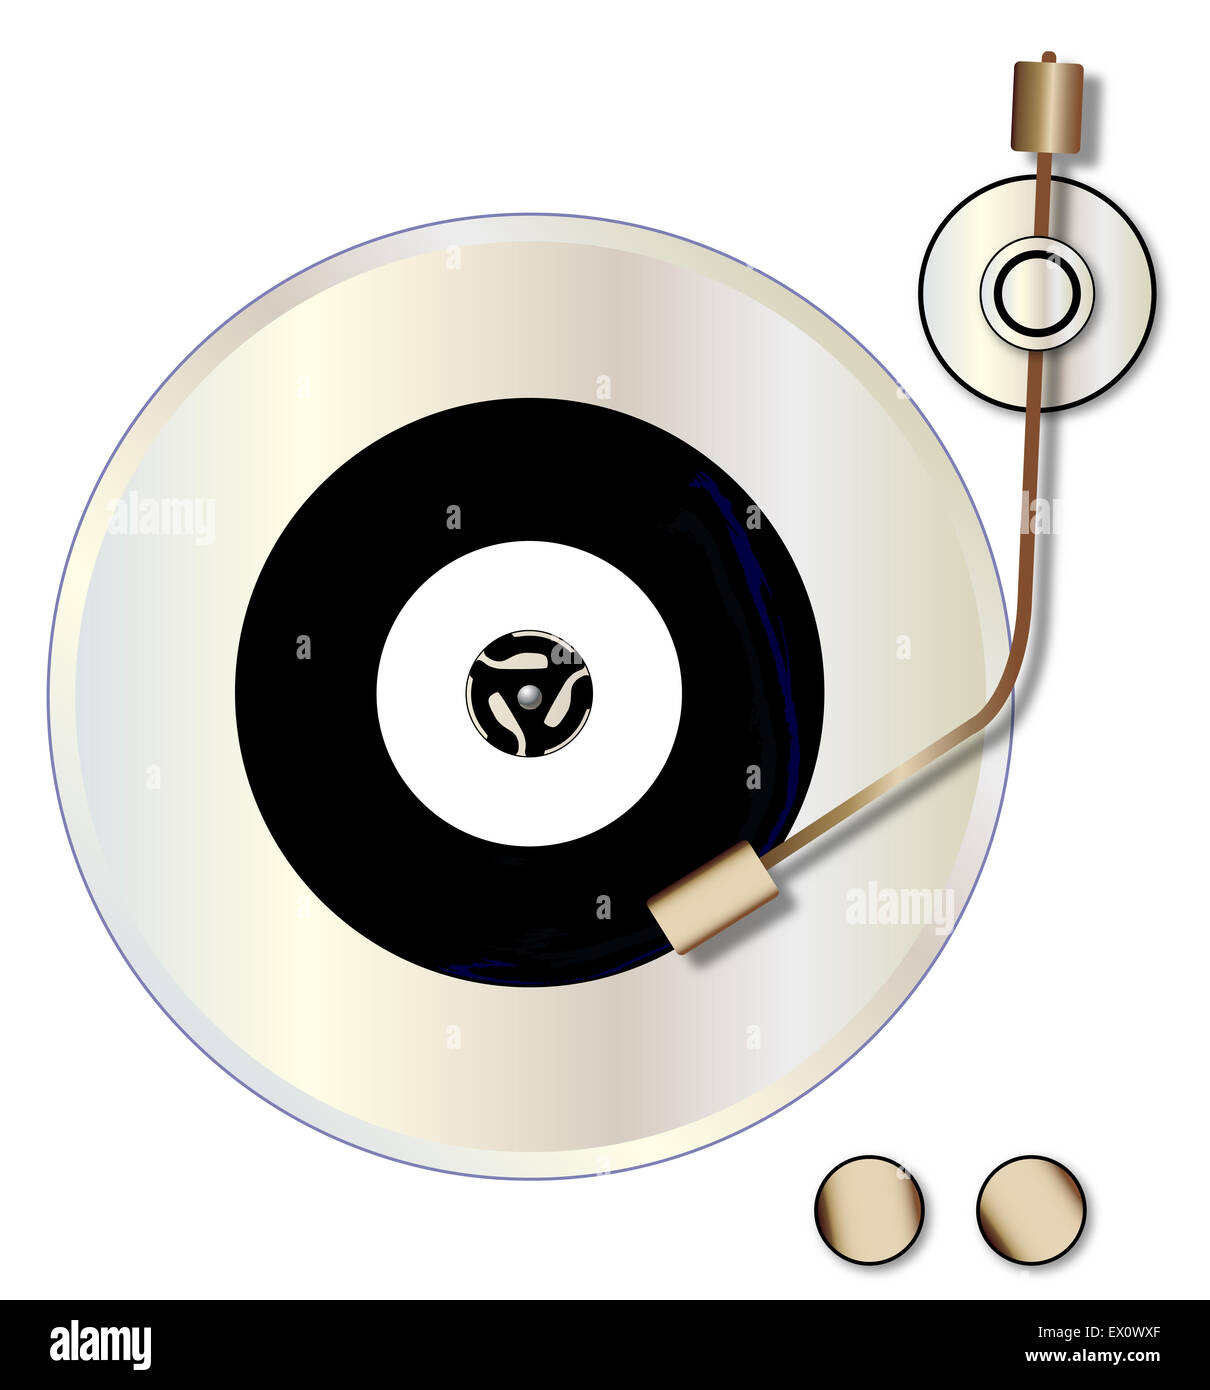 Un disque vinyle avec une étiquette vierge tournant sur un tourne-disque sur un fond blanc. Banque D'Images